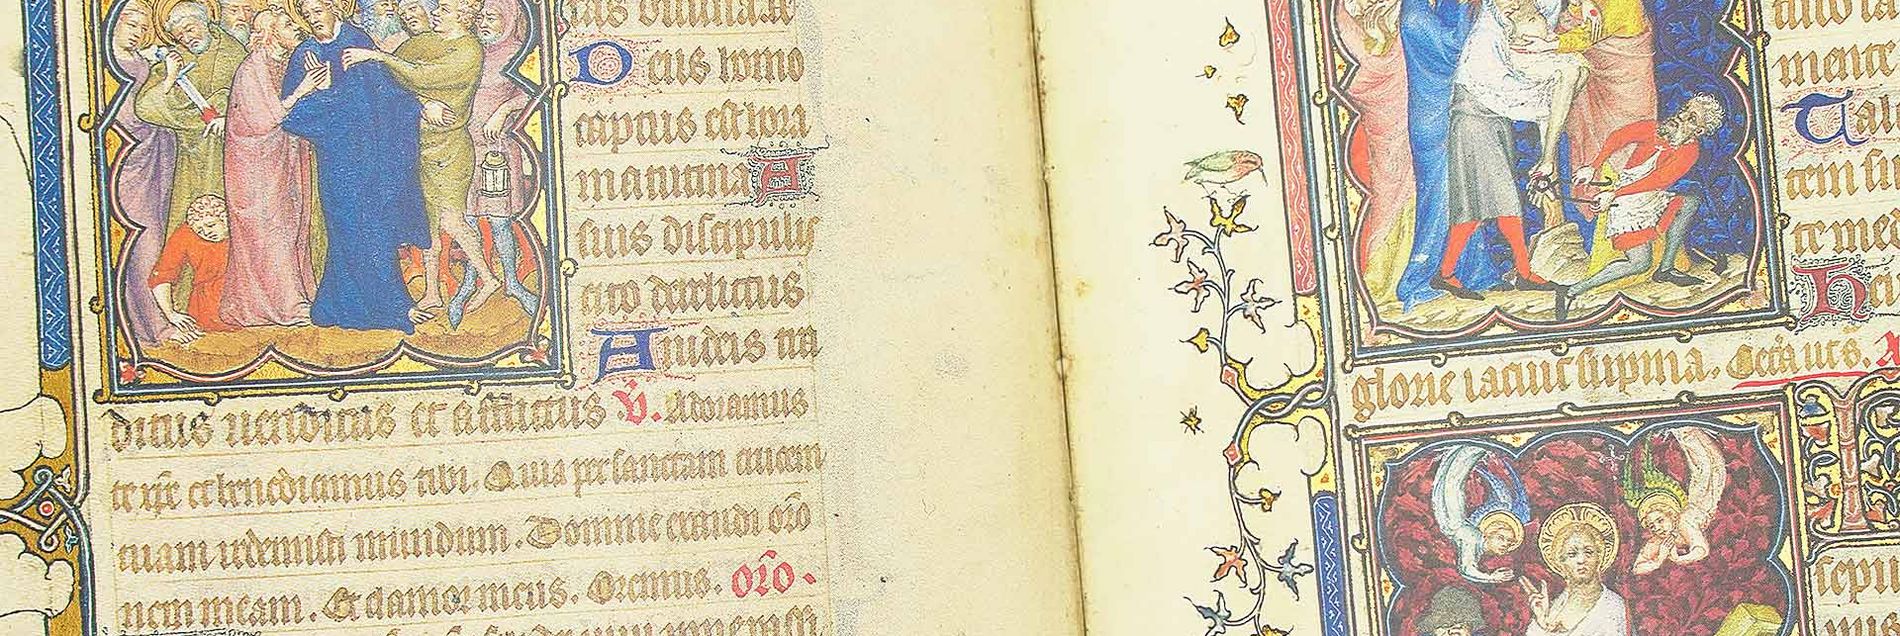 <i>“Ein grandioses Meisterwerk für einen der größten Bibliophilen des Mittelalters”</i>